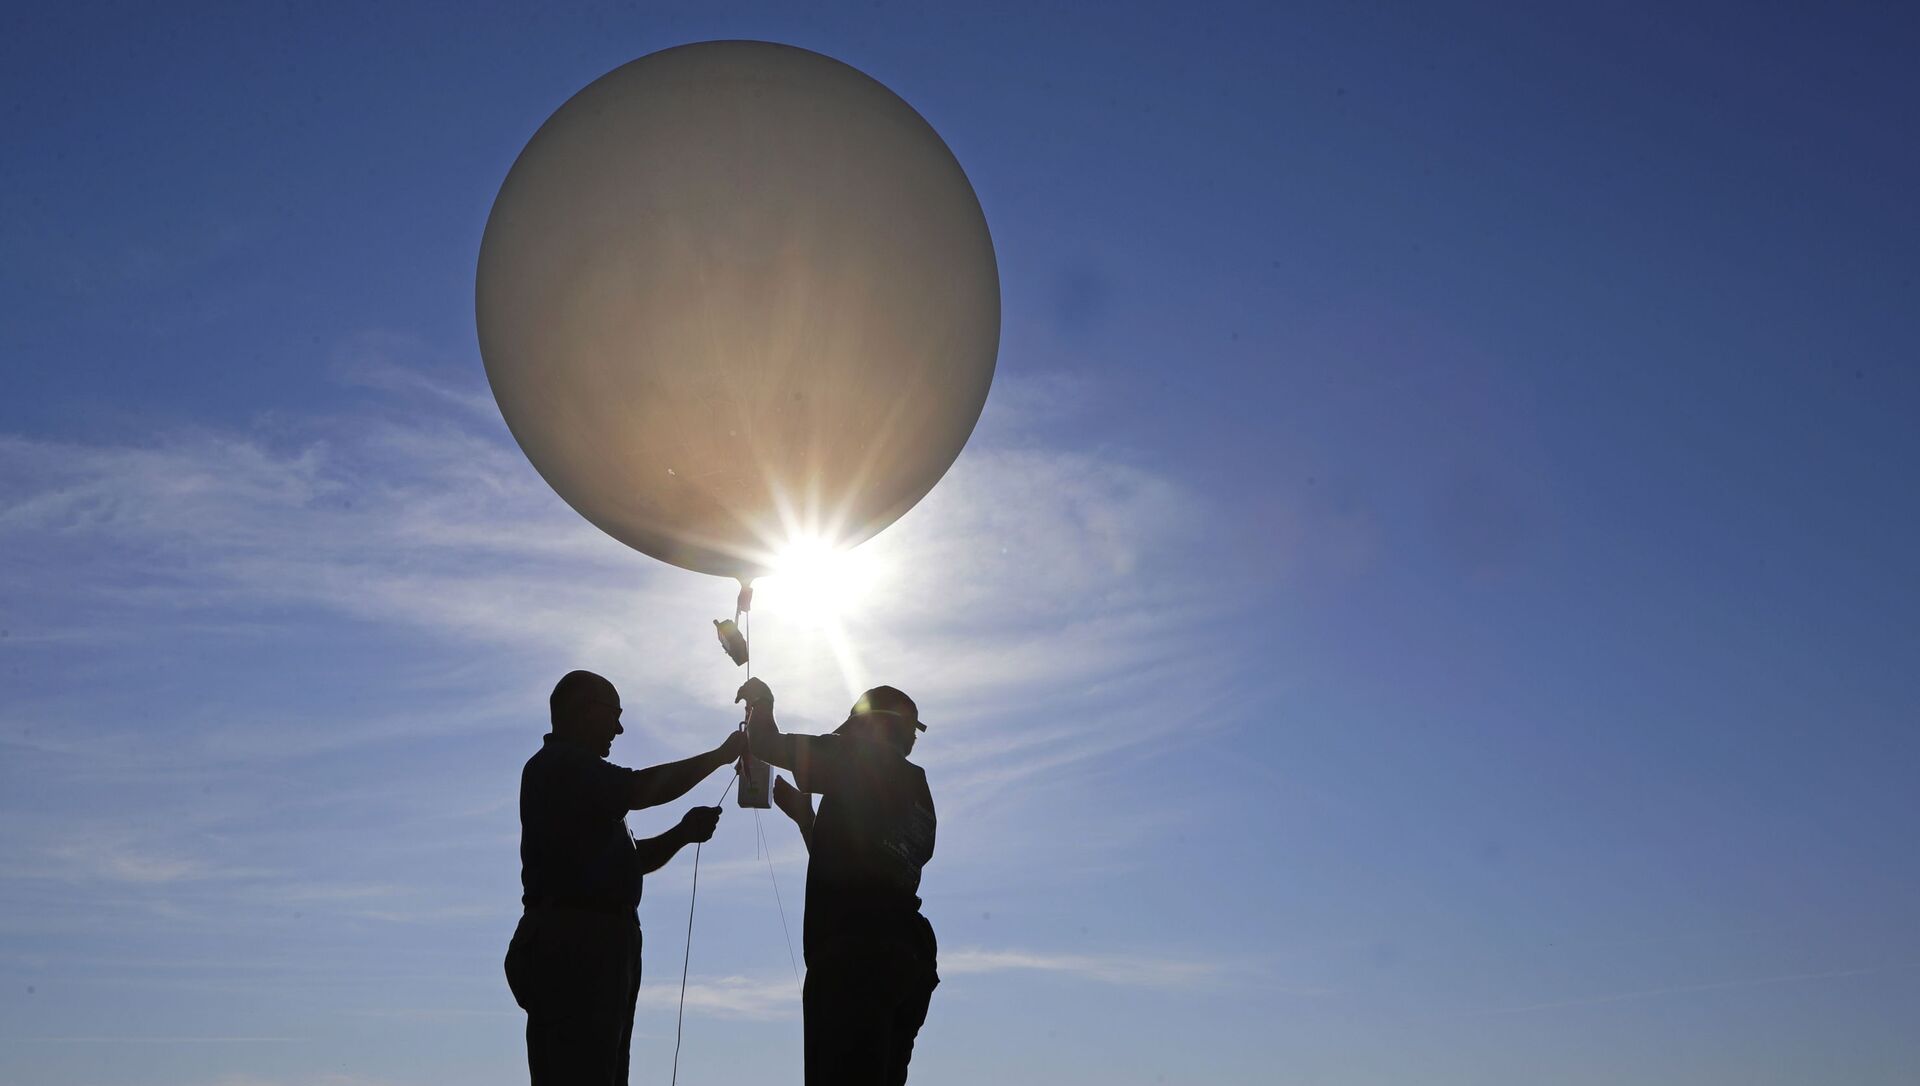 Unas personas lanzan un globo meteorológico (imagen referencial) - Sputnik Mundo, 1920, 05.02.2021